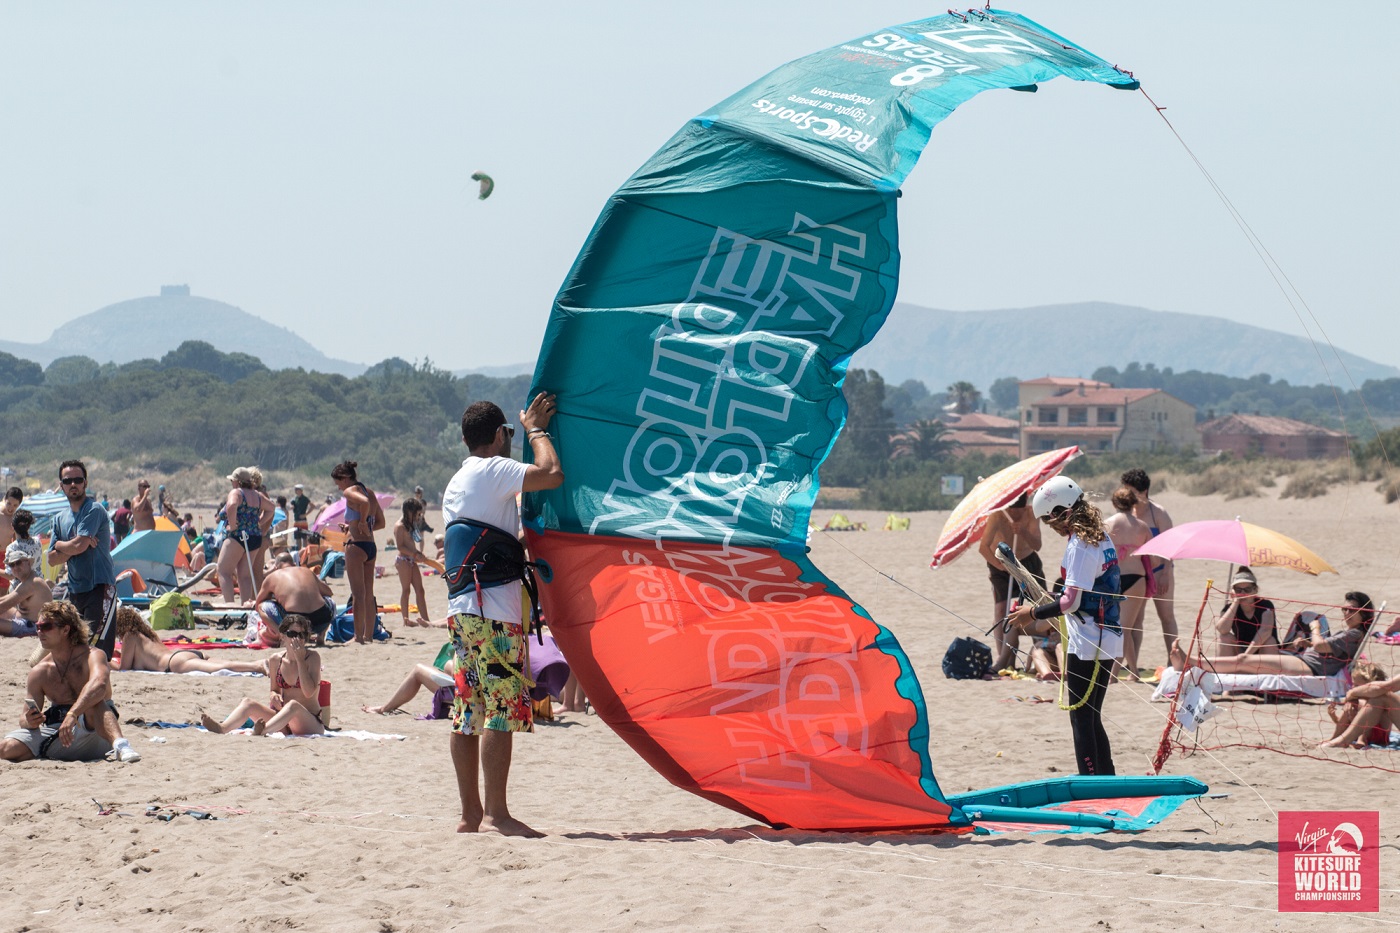 Montar y desmontar el kite en la arena, levantarlo son las primeras nociones que hay que aprender de kite.